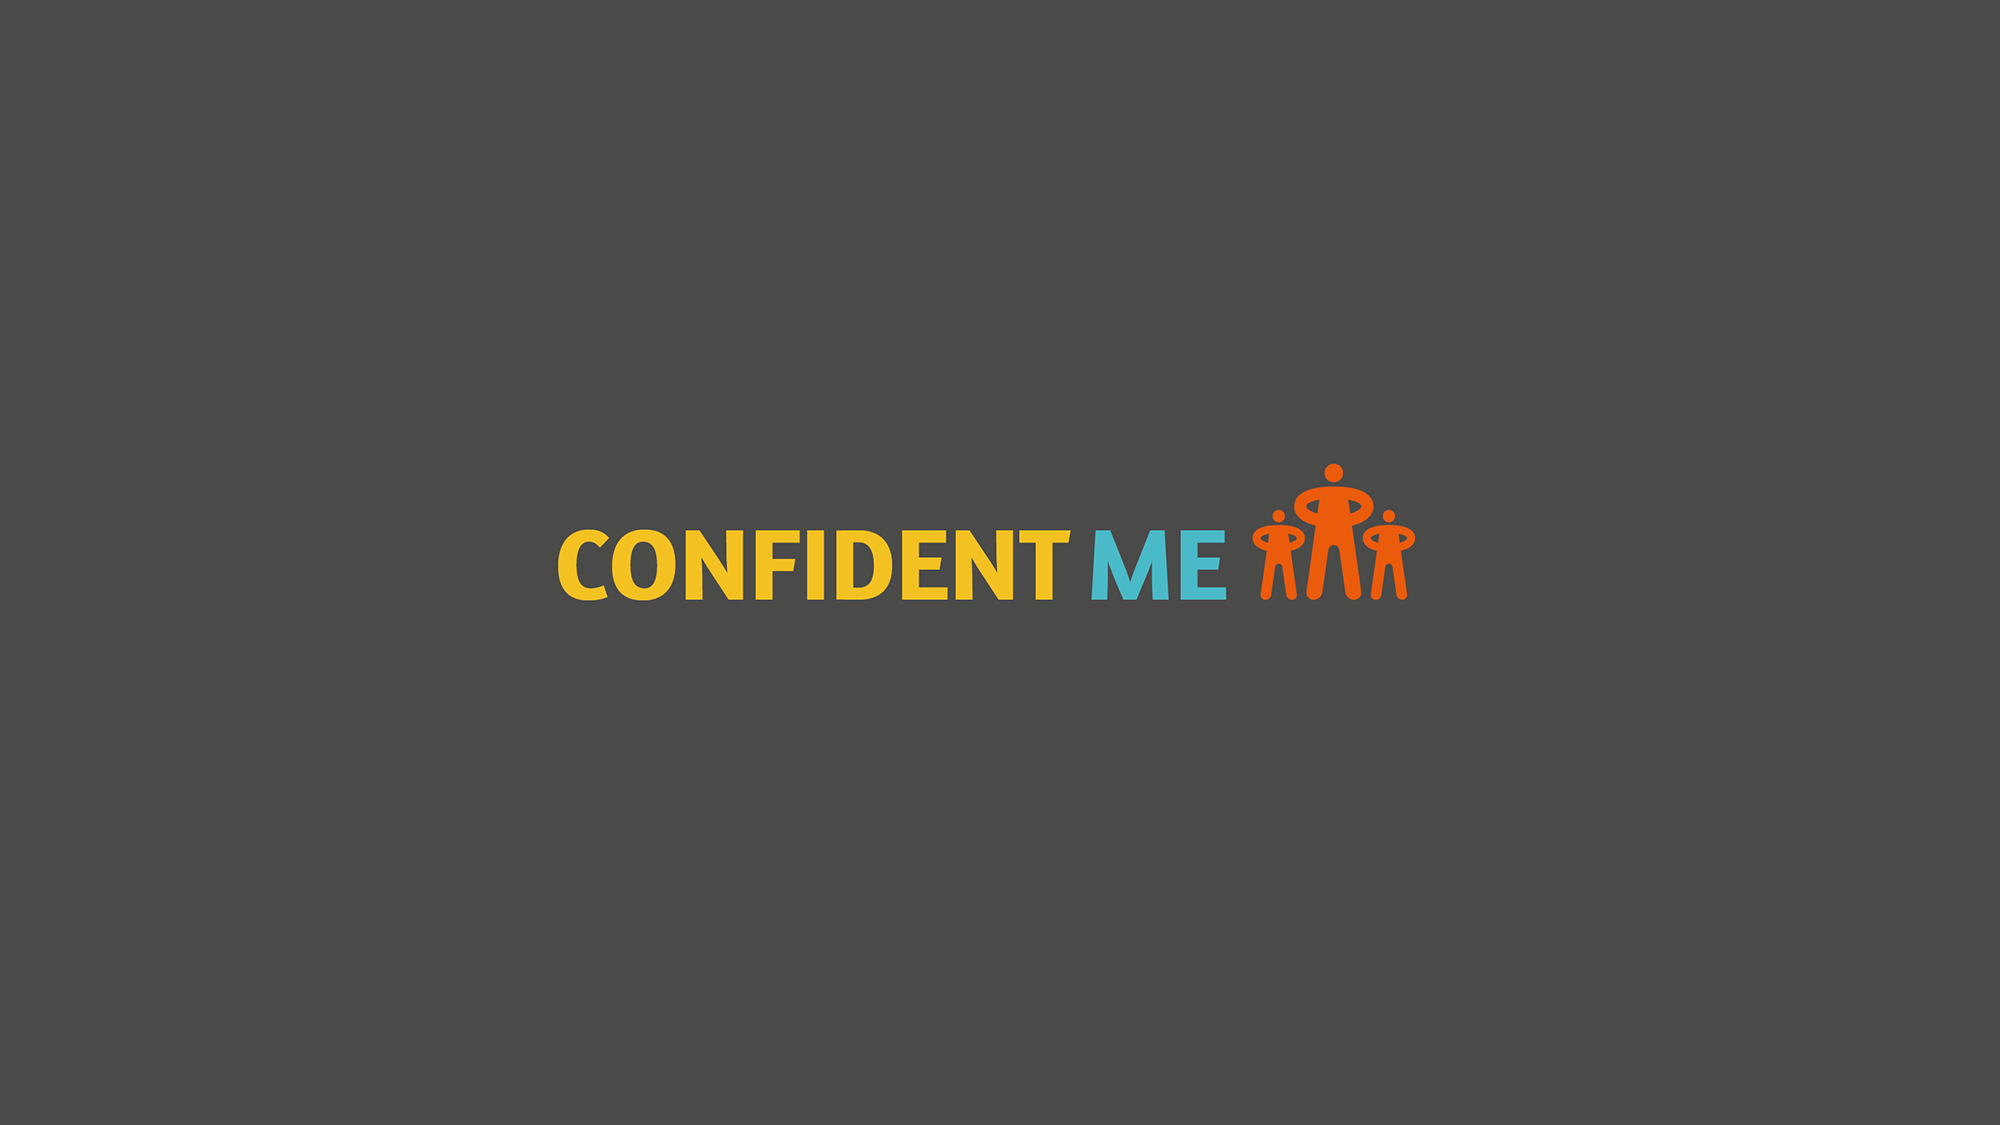 ConfidentME Week – #IAmRemarkable